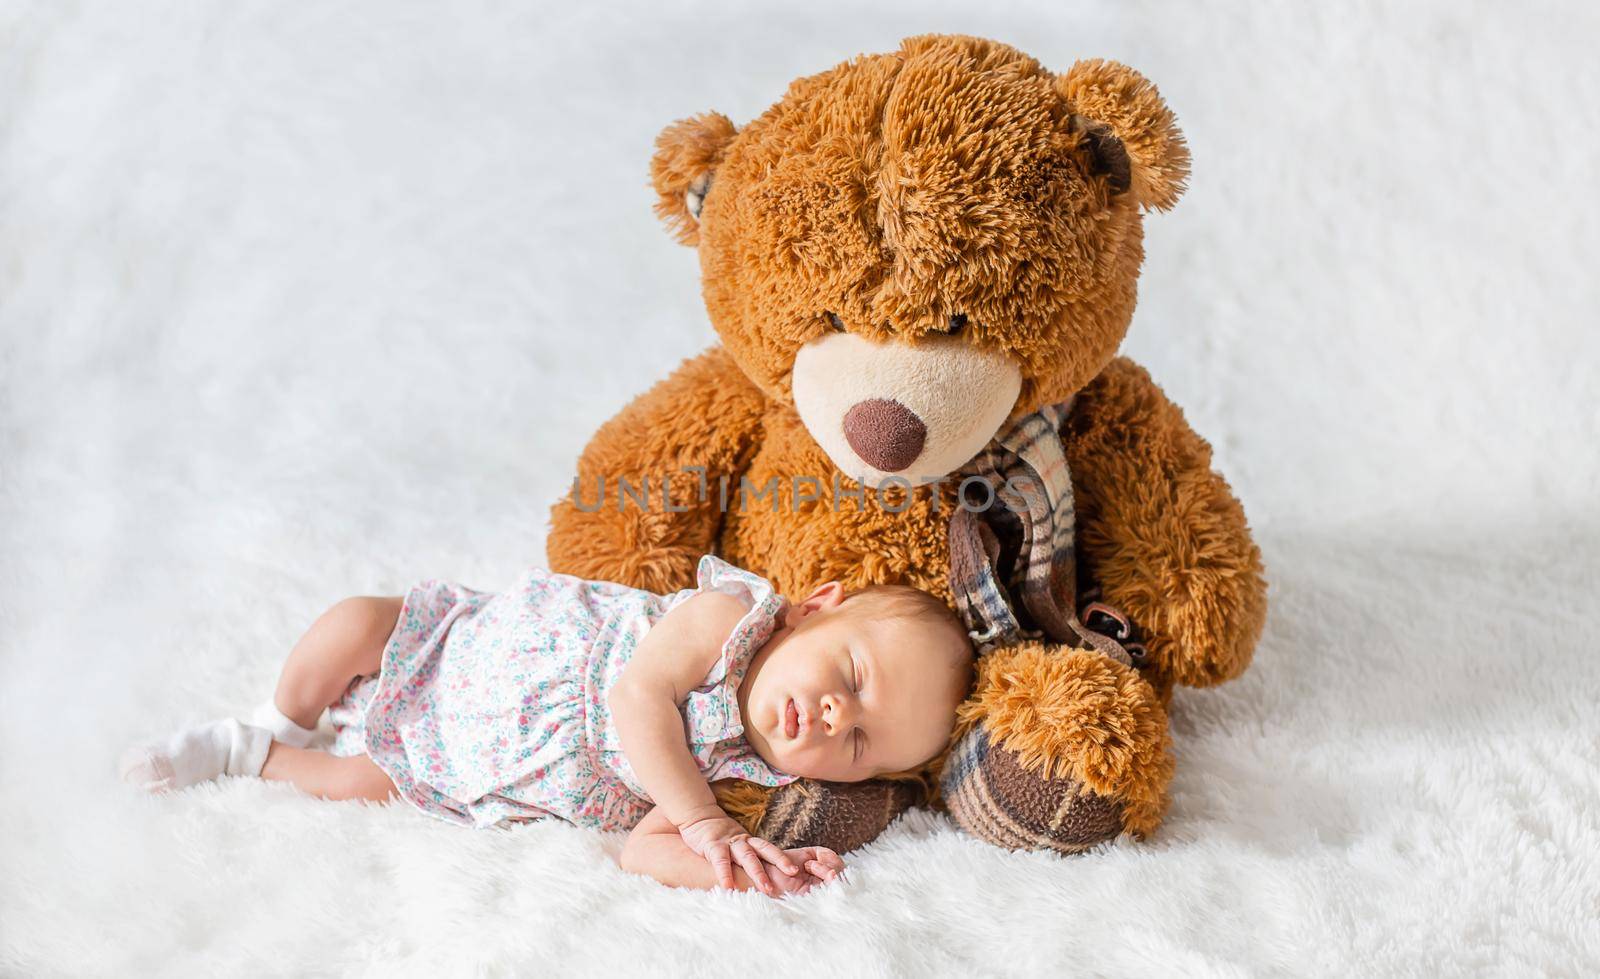 A newborn baby sleeps with a teddy bear. Selective focus. by yanadjana